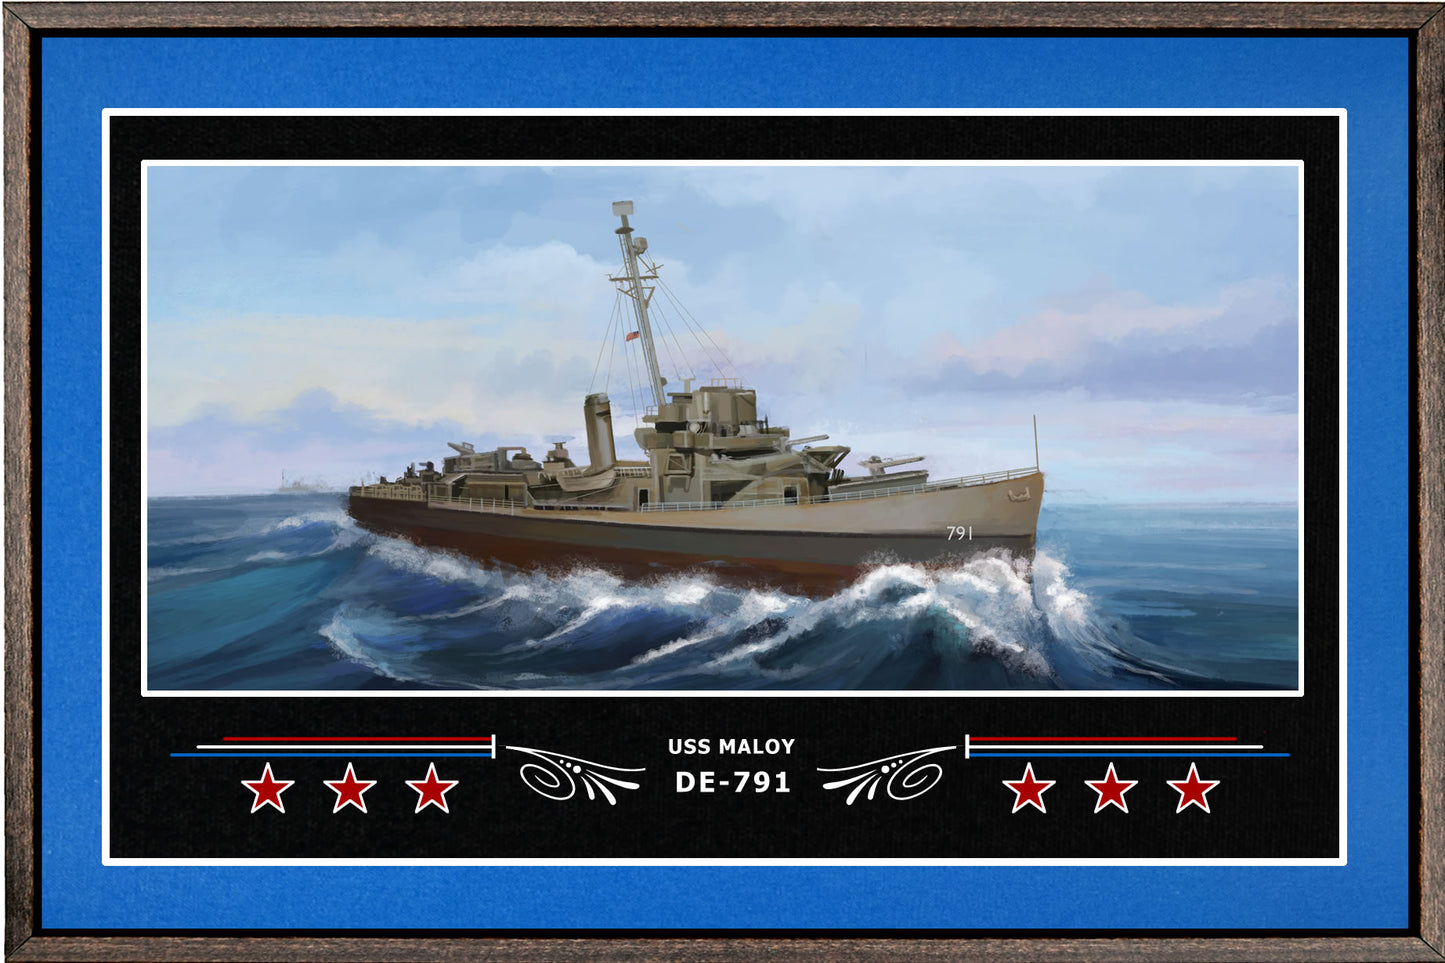 USS MALOY DE 791 BOX FRAMED CANVAS ART BLUE